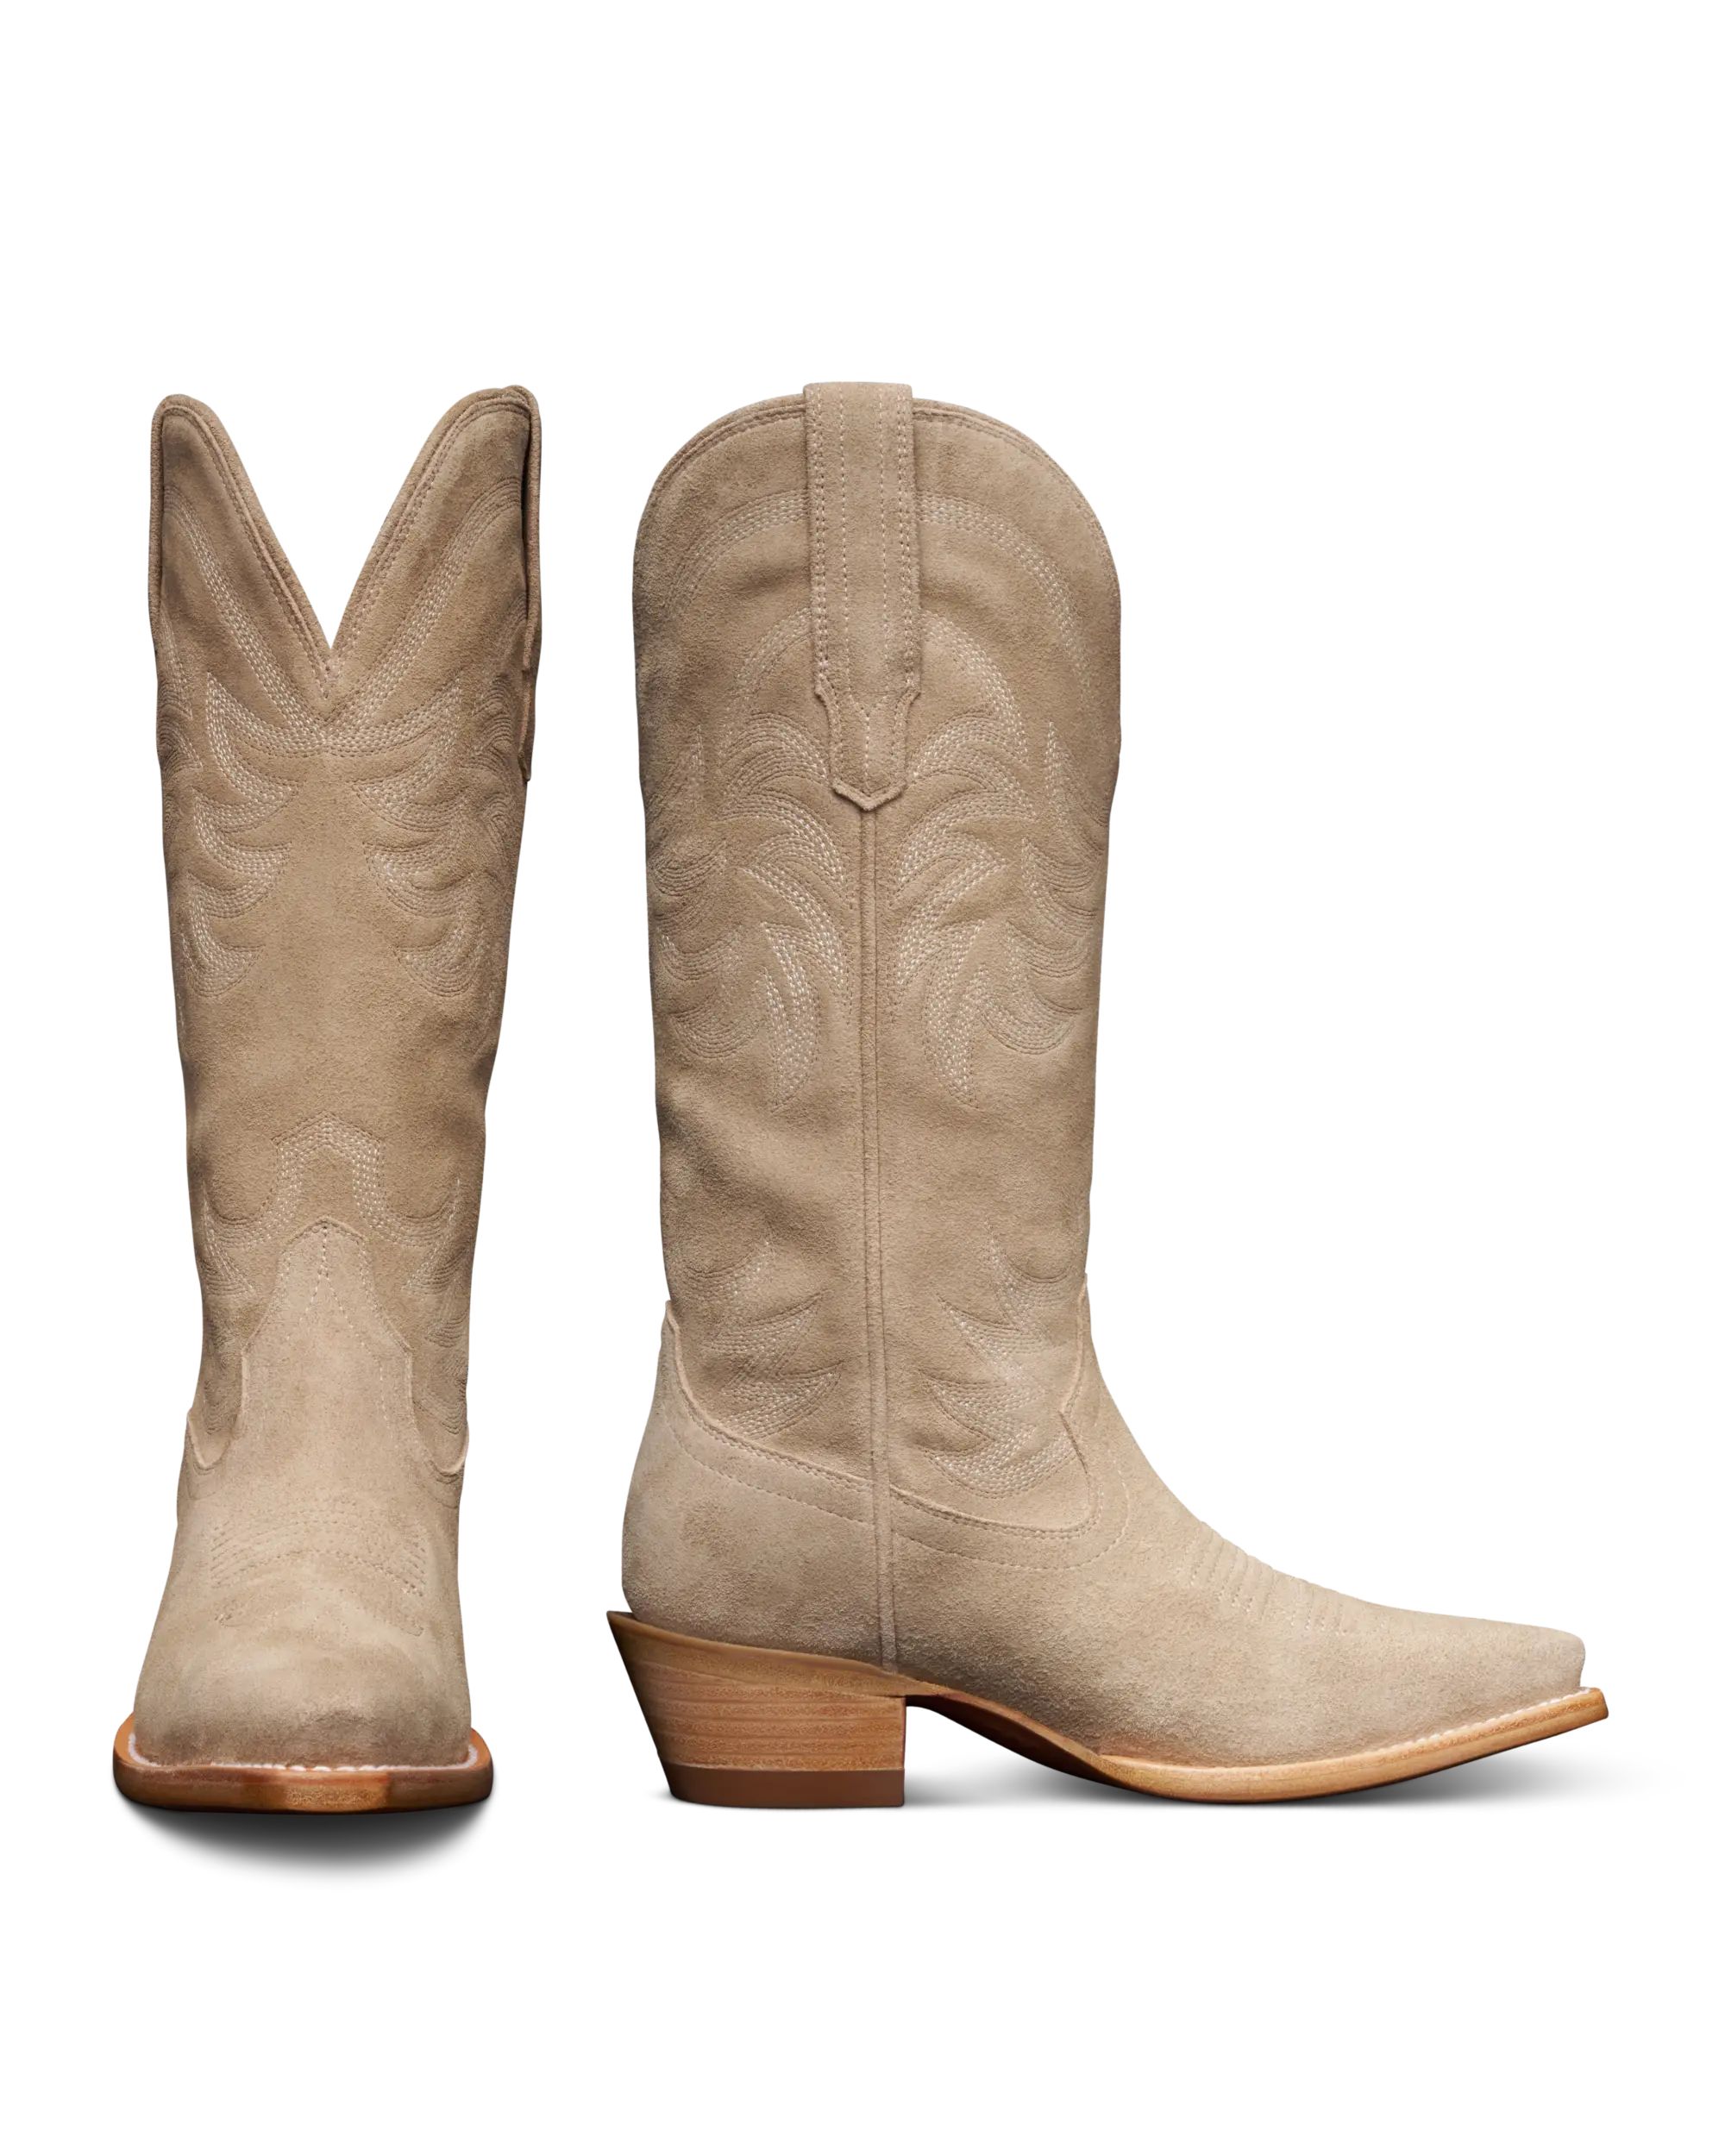 Women's Tall Cowgirl Boots |  The Annie - Fawn | Tecovas | Tecovas